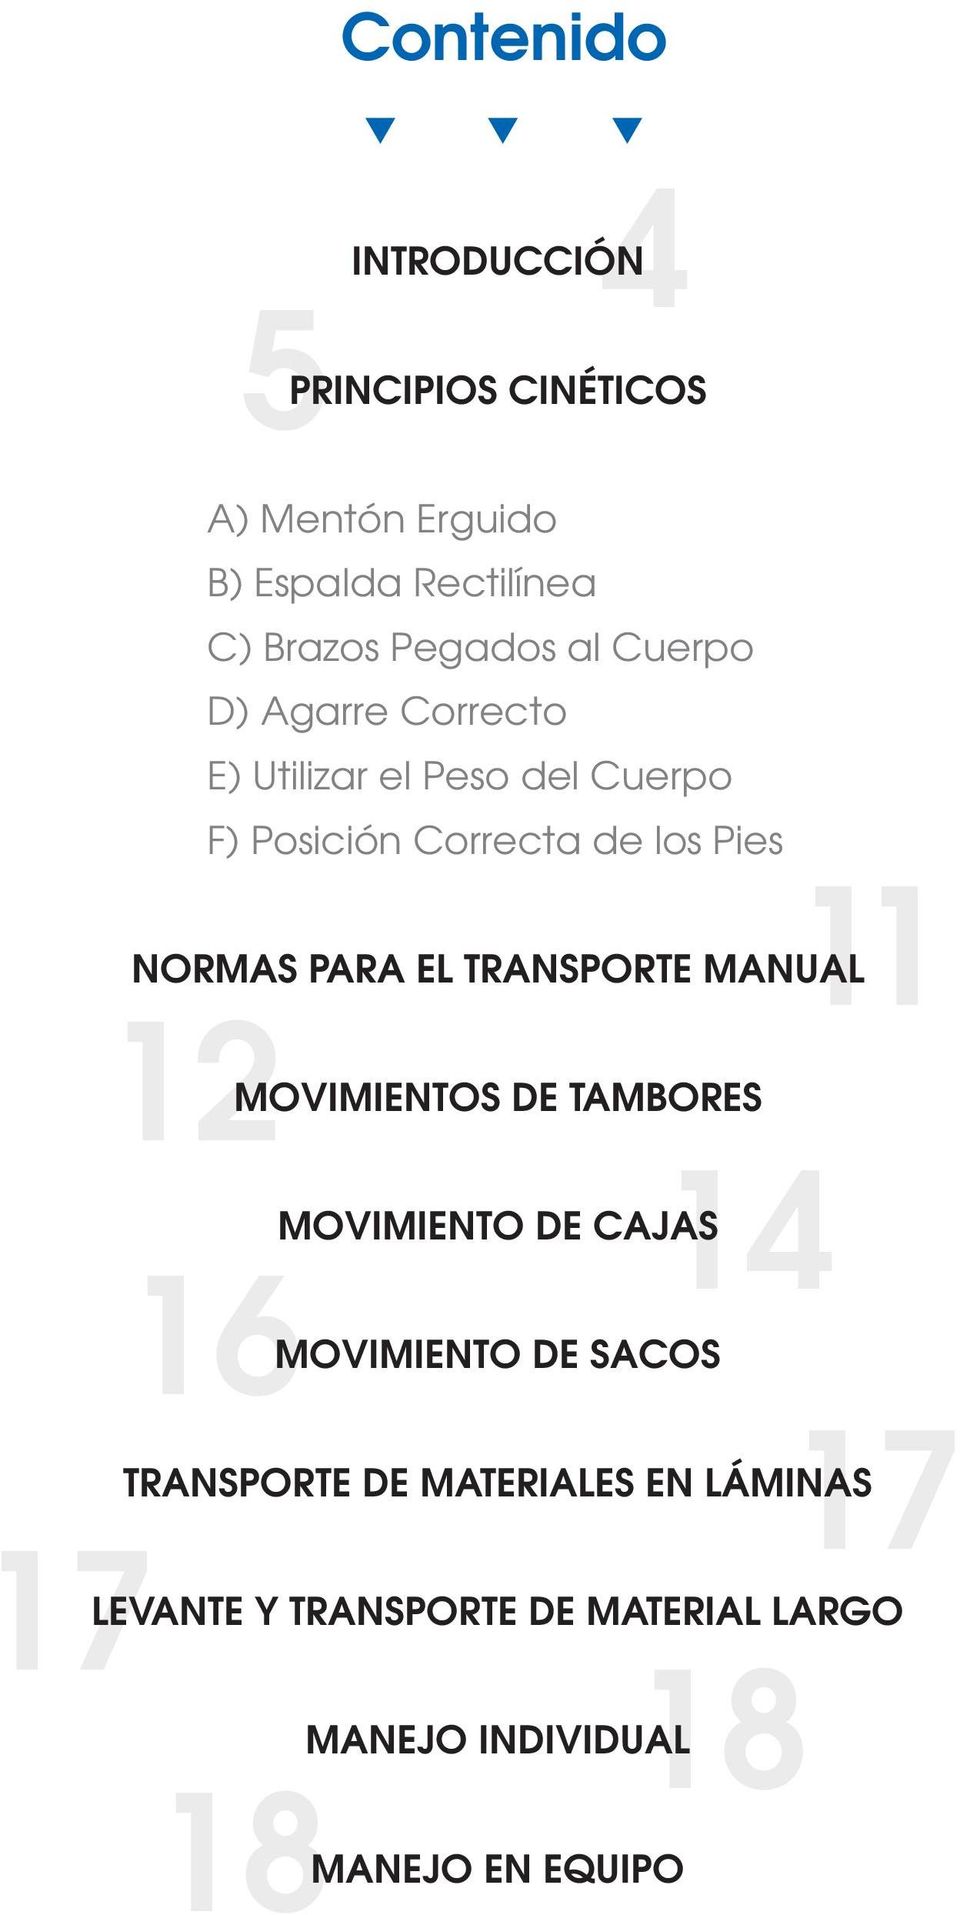 17 18 18 NORMAS PARA EL TRANSPORTE MANUAL MOVIMIENTOS DE TAMBORES MOVIMIENTO DE CAJAS MOVIMIENTO DE SACOS